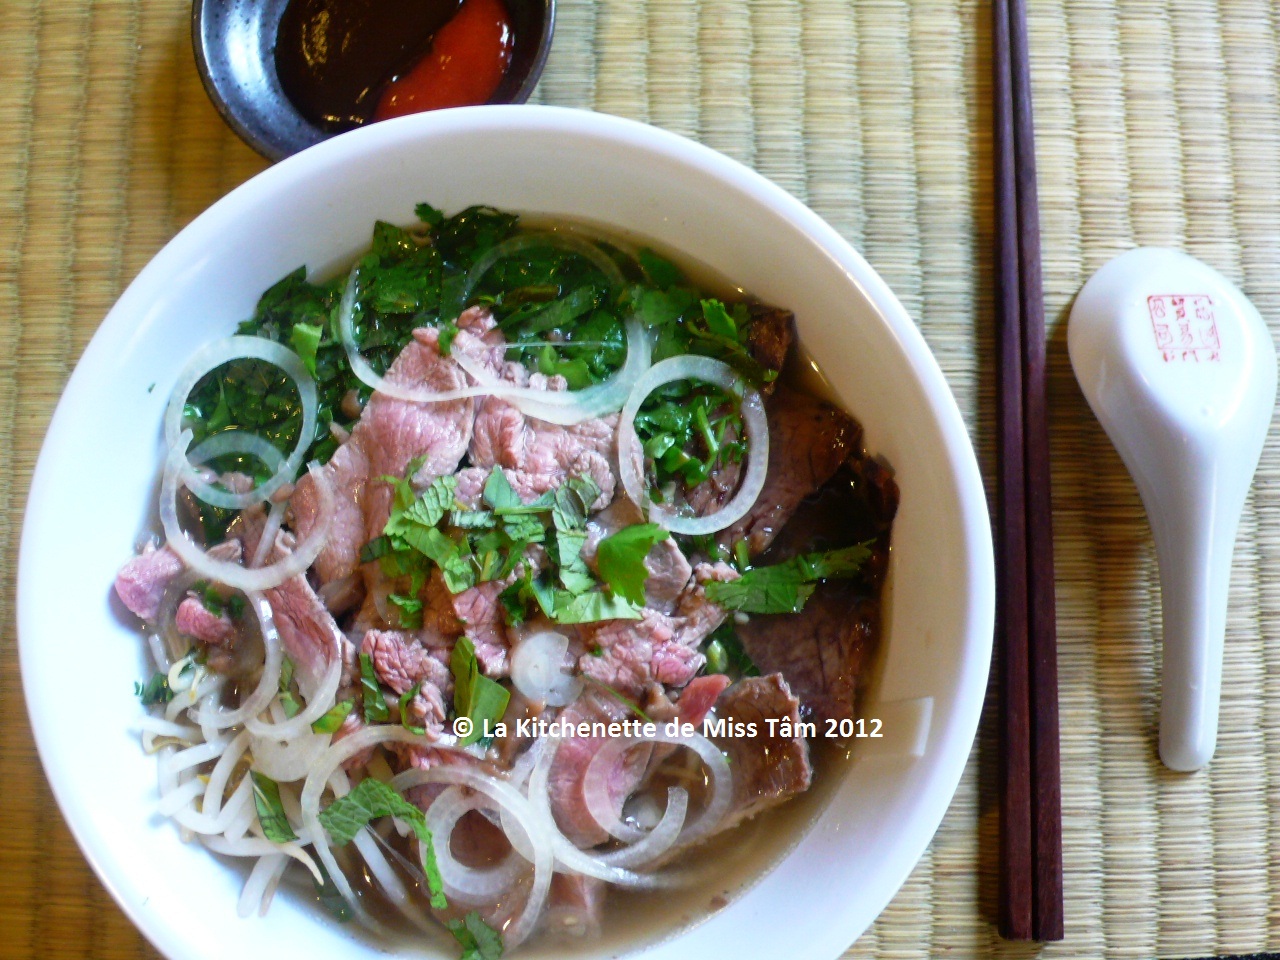 Retrouvez le meilleur des recettes issues de la cuisine asiatique